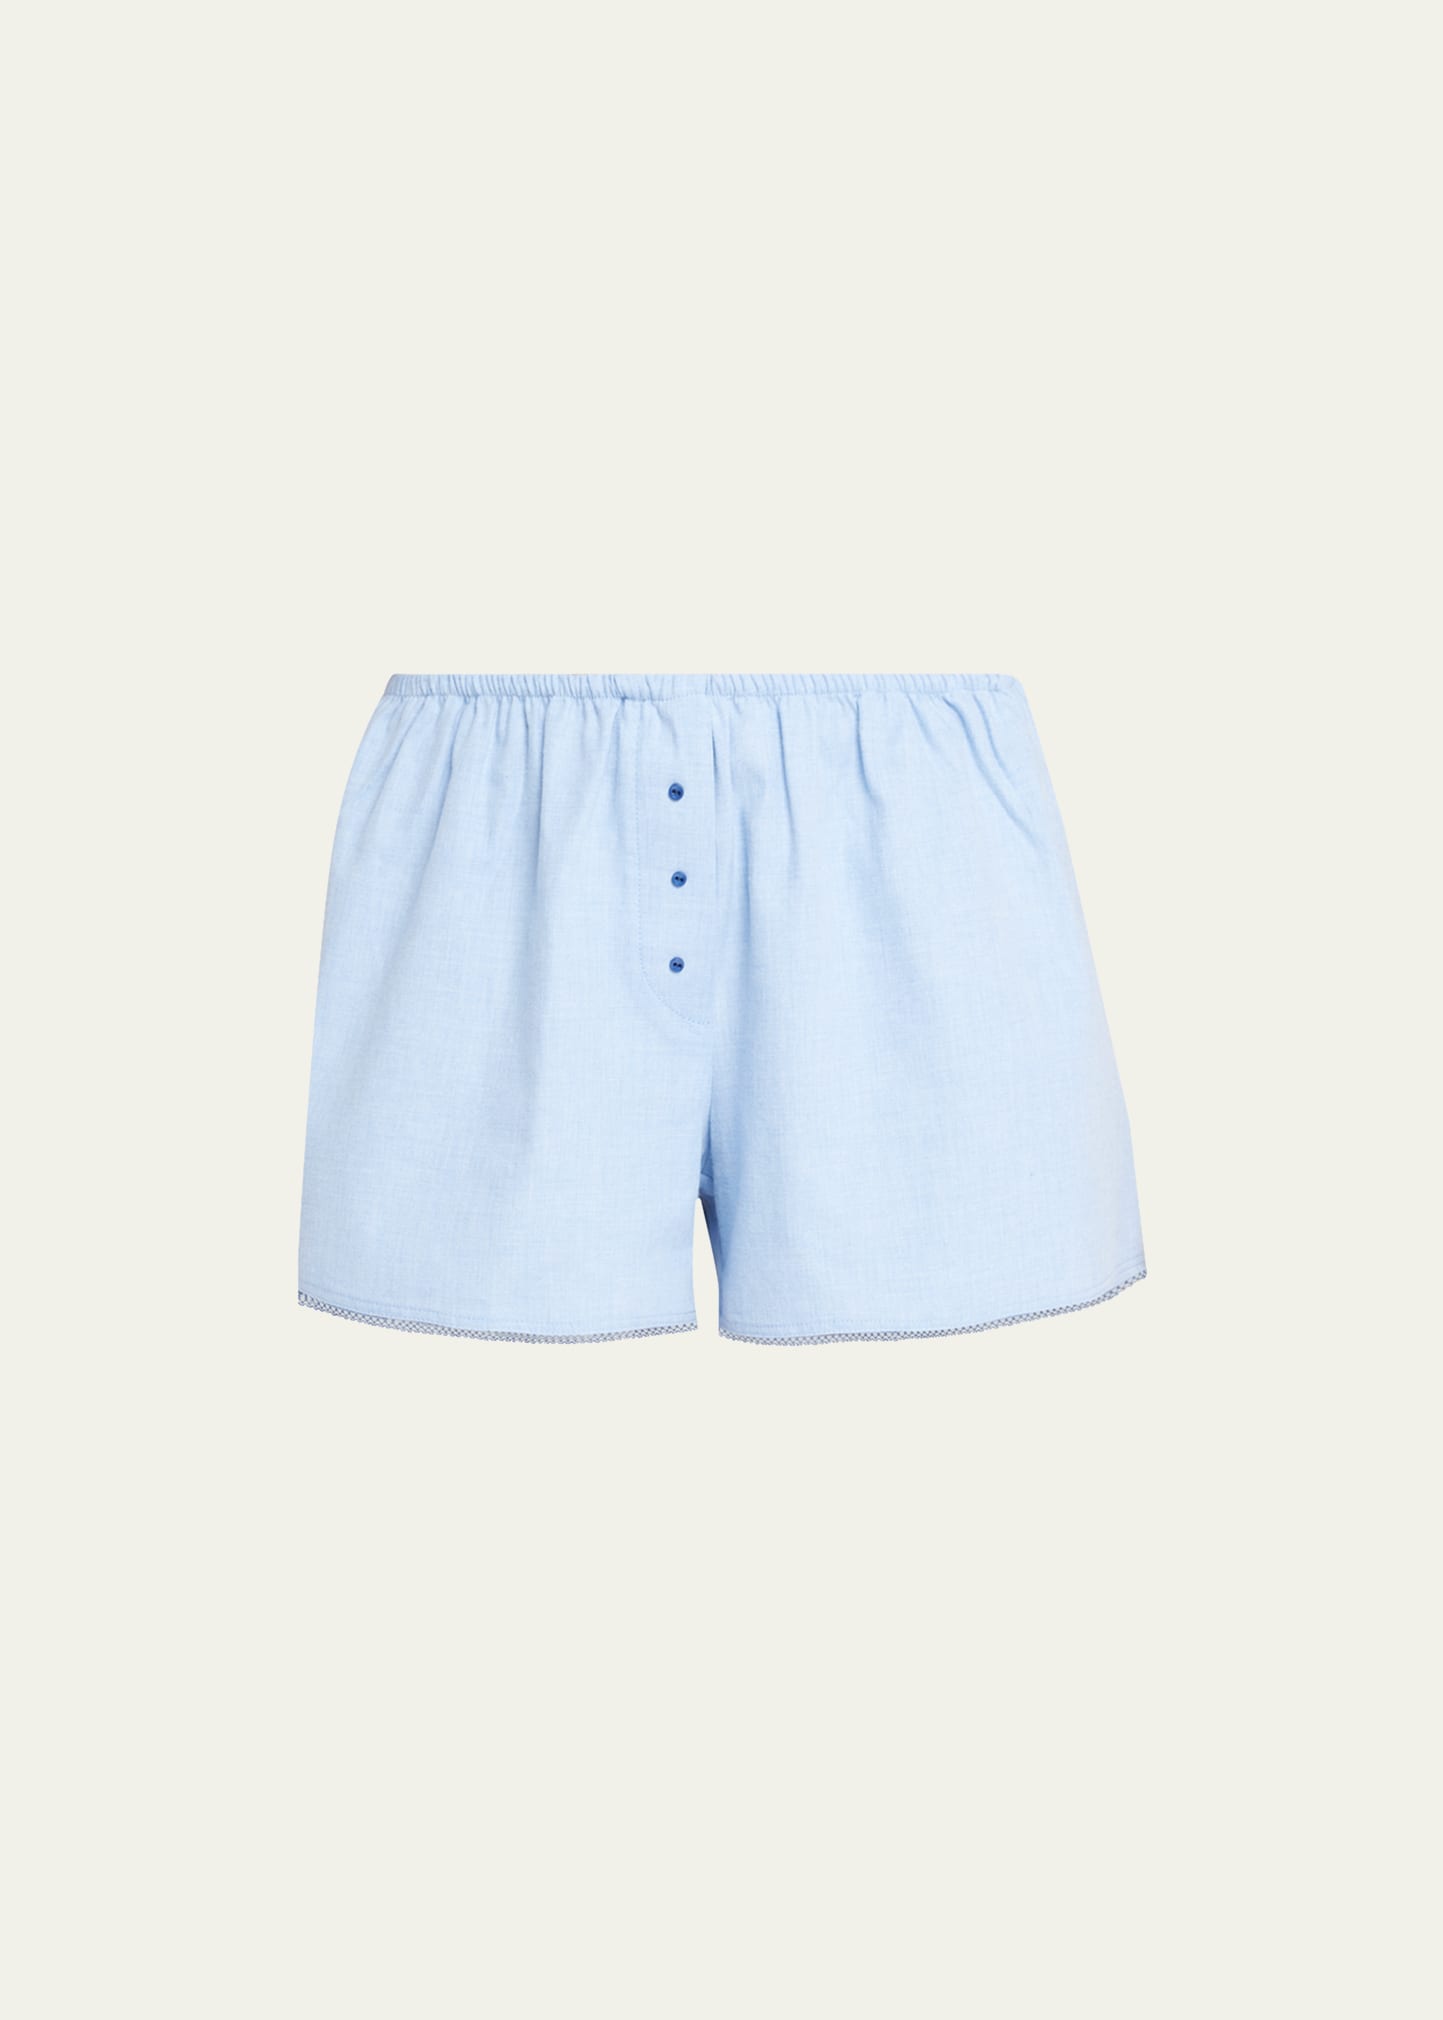 Andine Gigi Lace-Trim Cotton Shorts